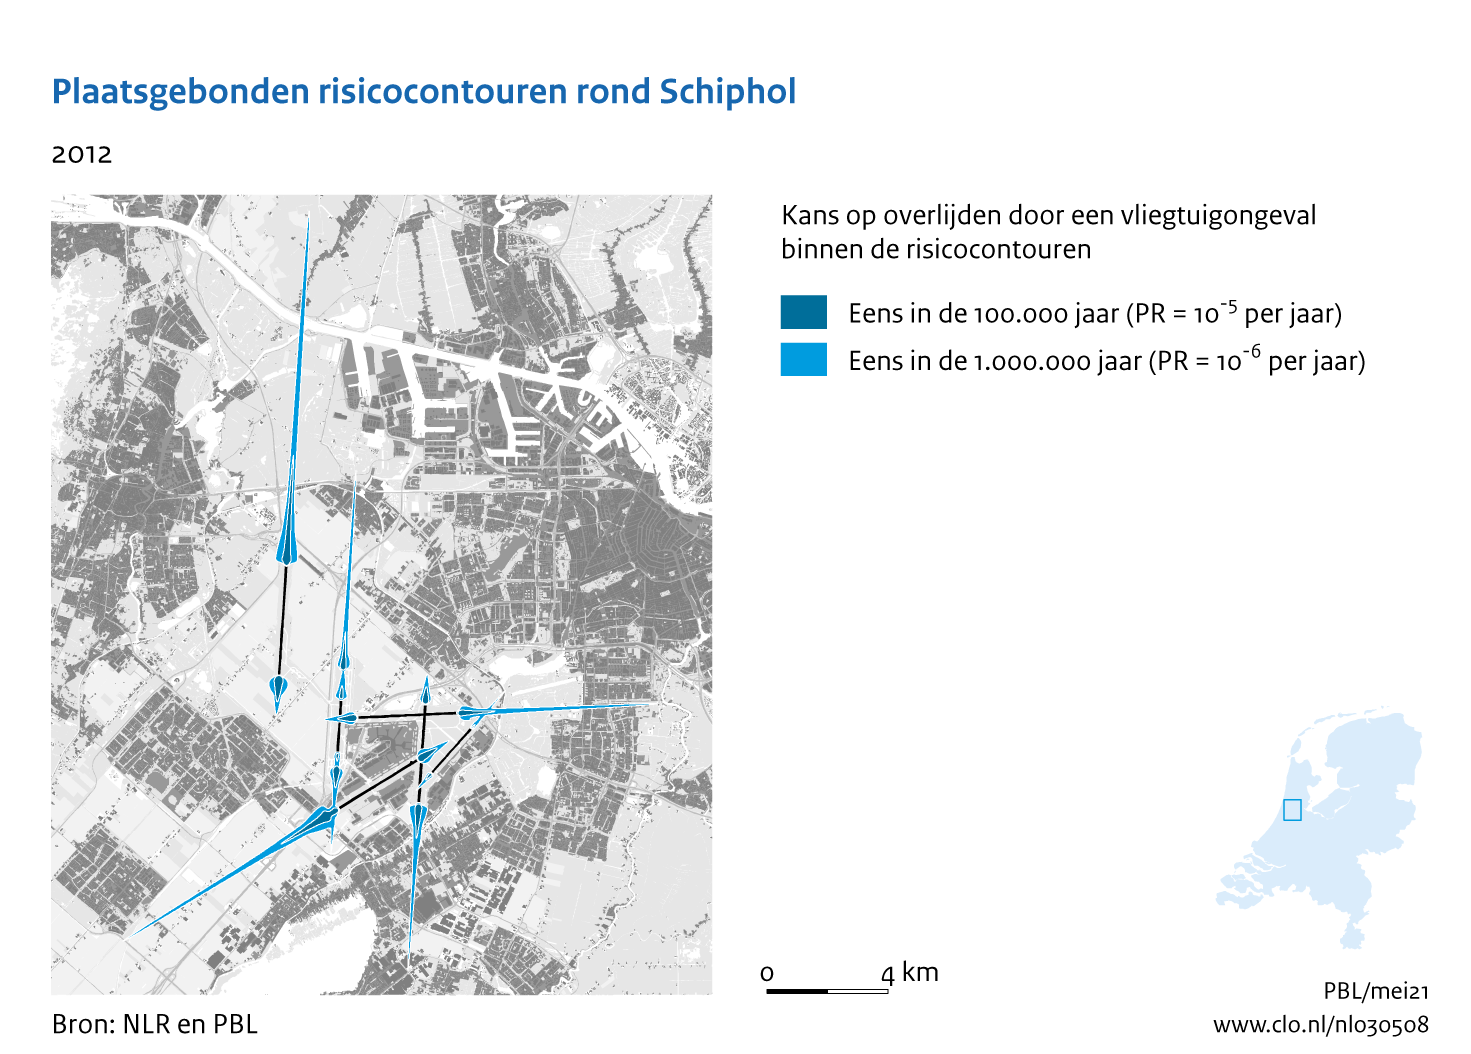 Figuur Plaatsgebonden risicocontouren rond Schiphol, 2012. In de rest van de tekst wordt deze figuur uitgebreider uitgelegd.